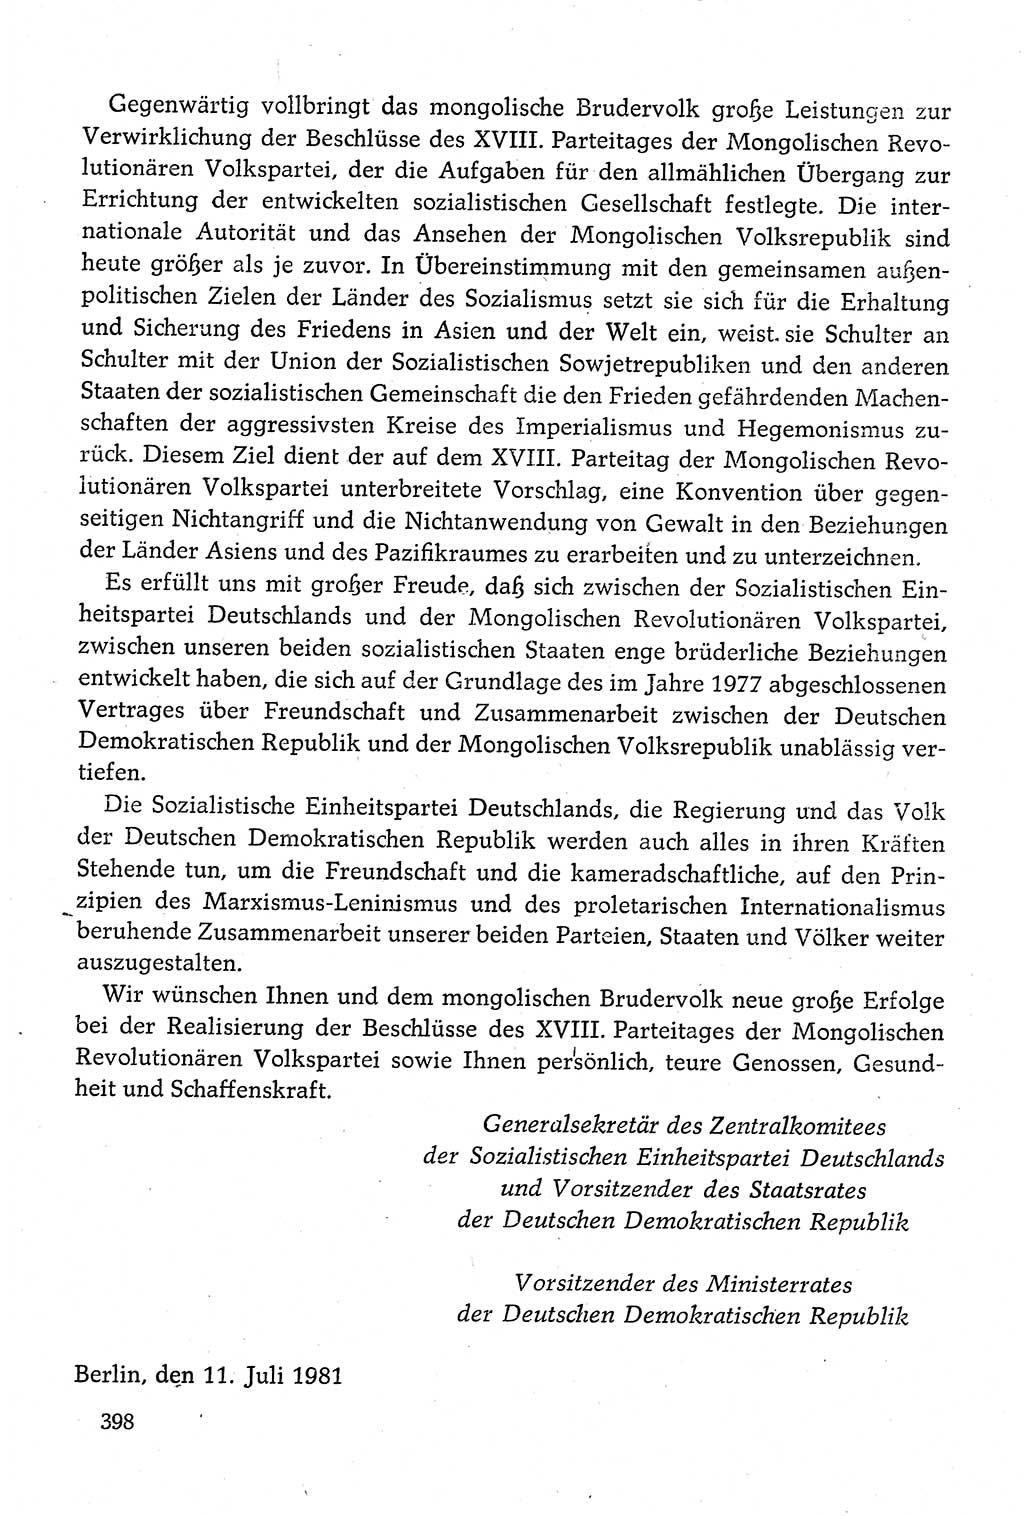 Dokumente der Sozialistischen Einheitspartei Deutschlands (SED) [Deutsche Demokratische Republik (DDR)] 1980-1981, Seite 398 (Dok. SED DDR 1980-1981, S. 398)